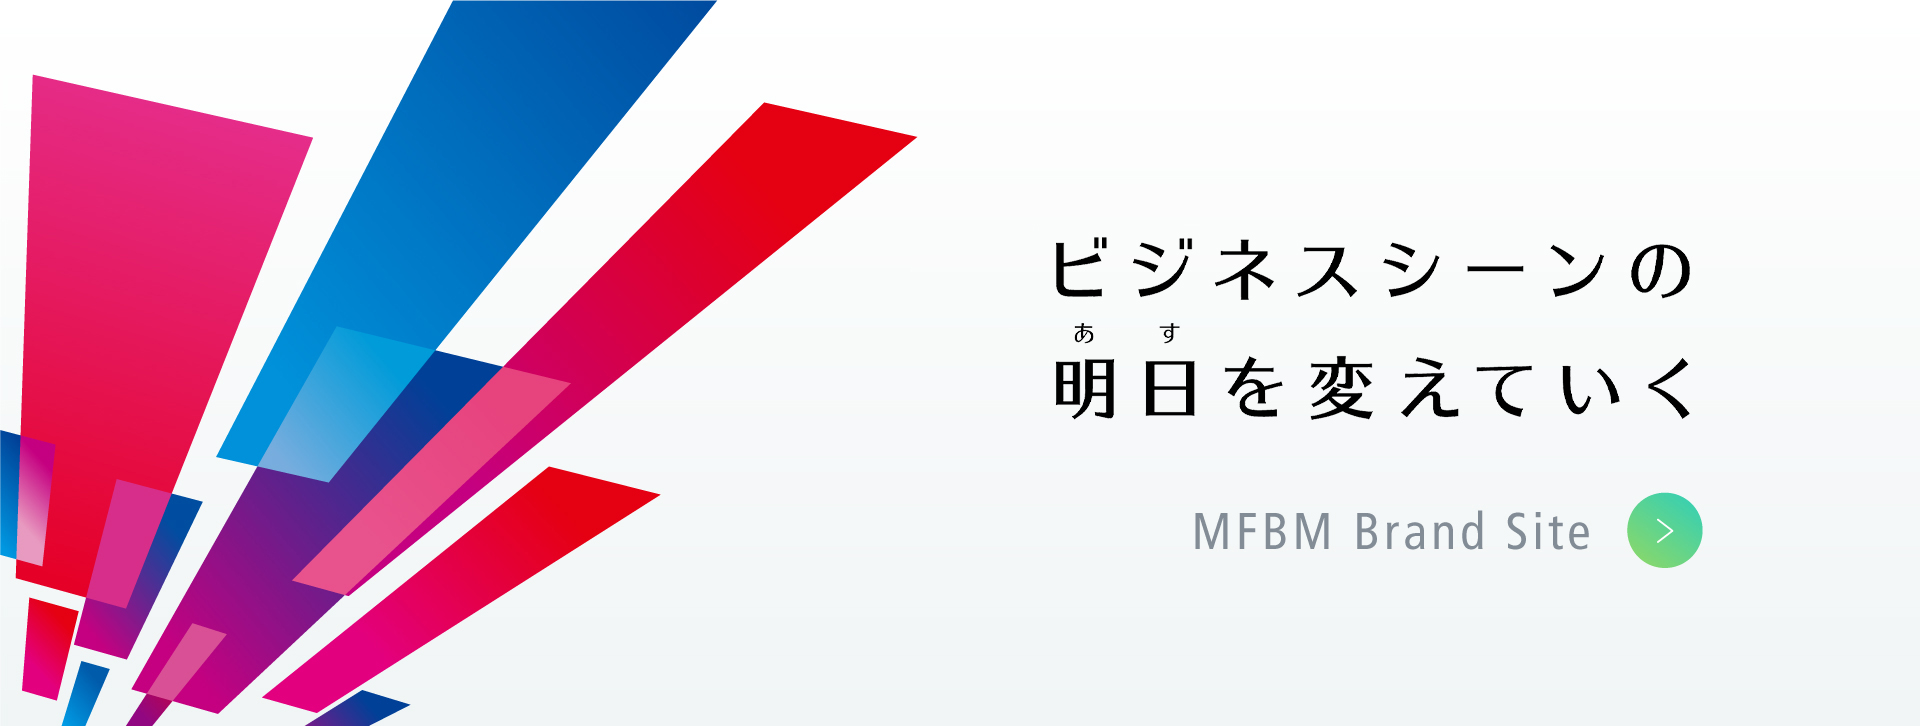 ビジネスシーンの明日を変えていく MFBM Brand Site